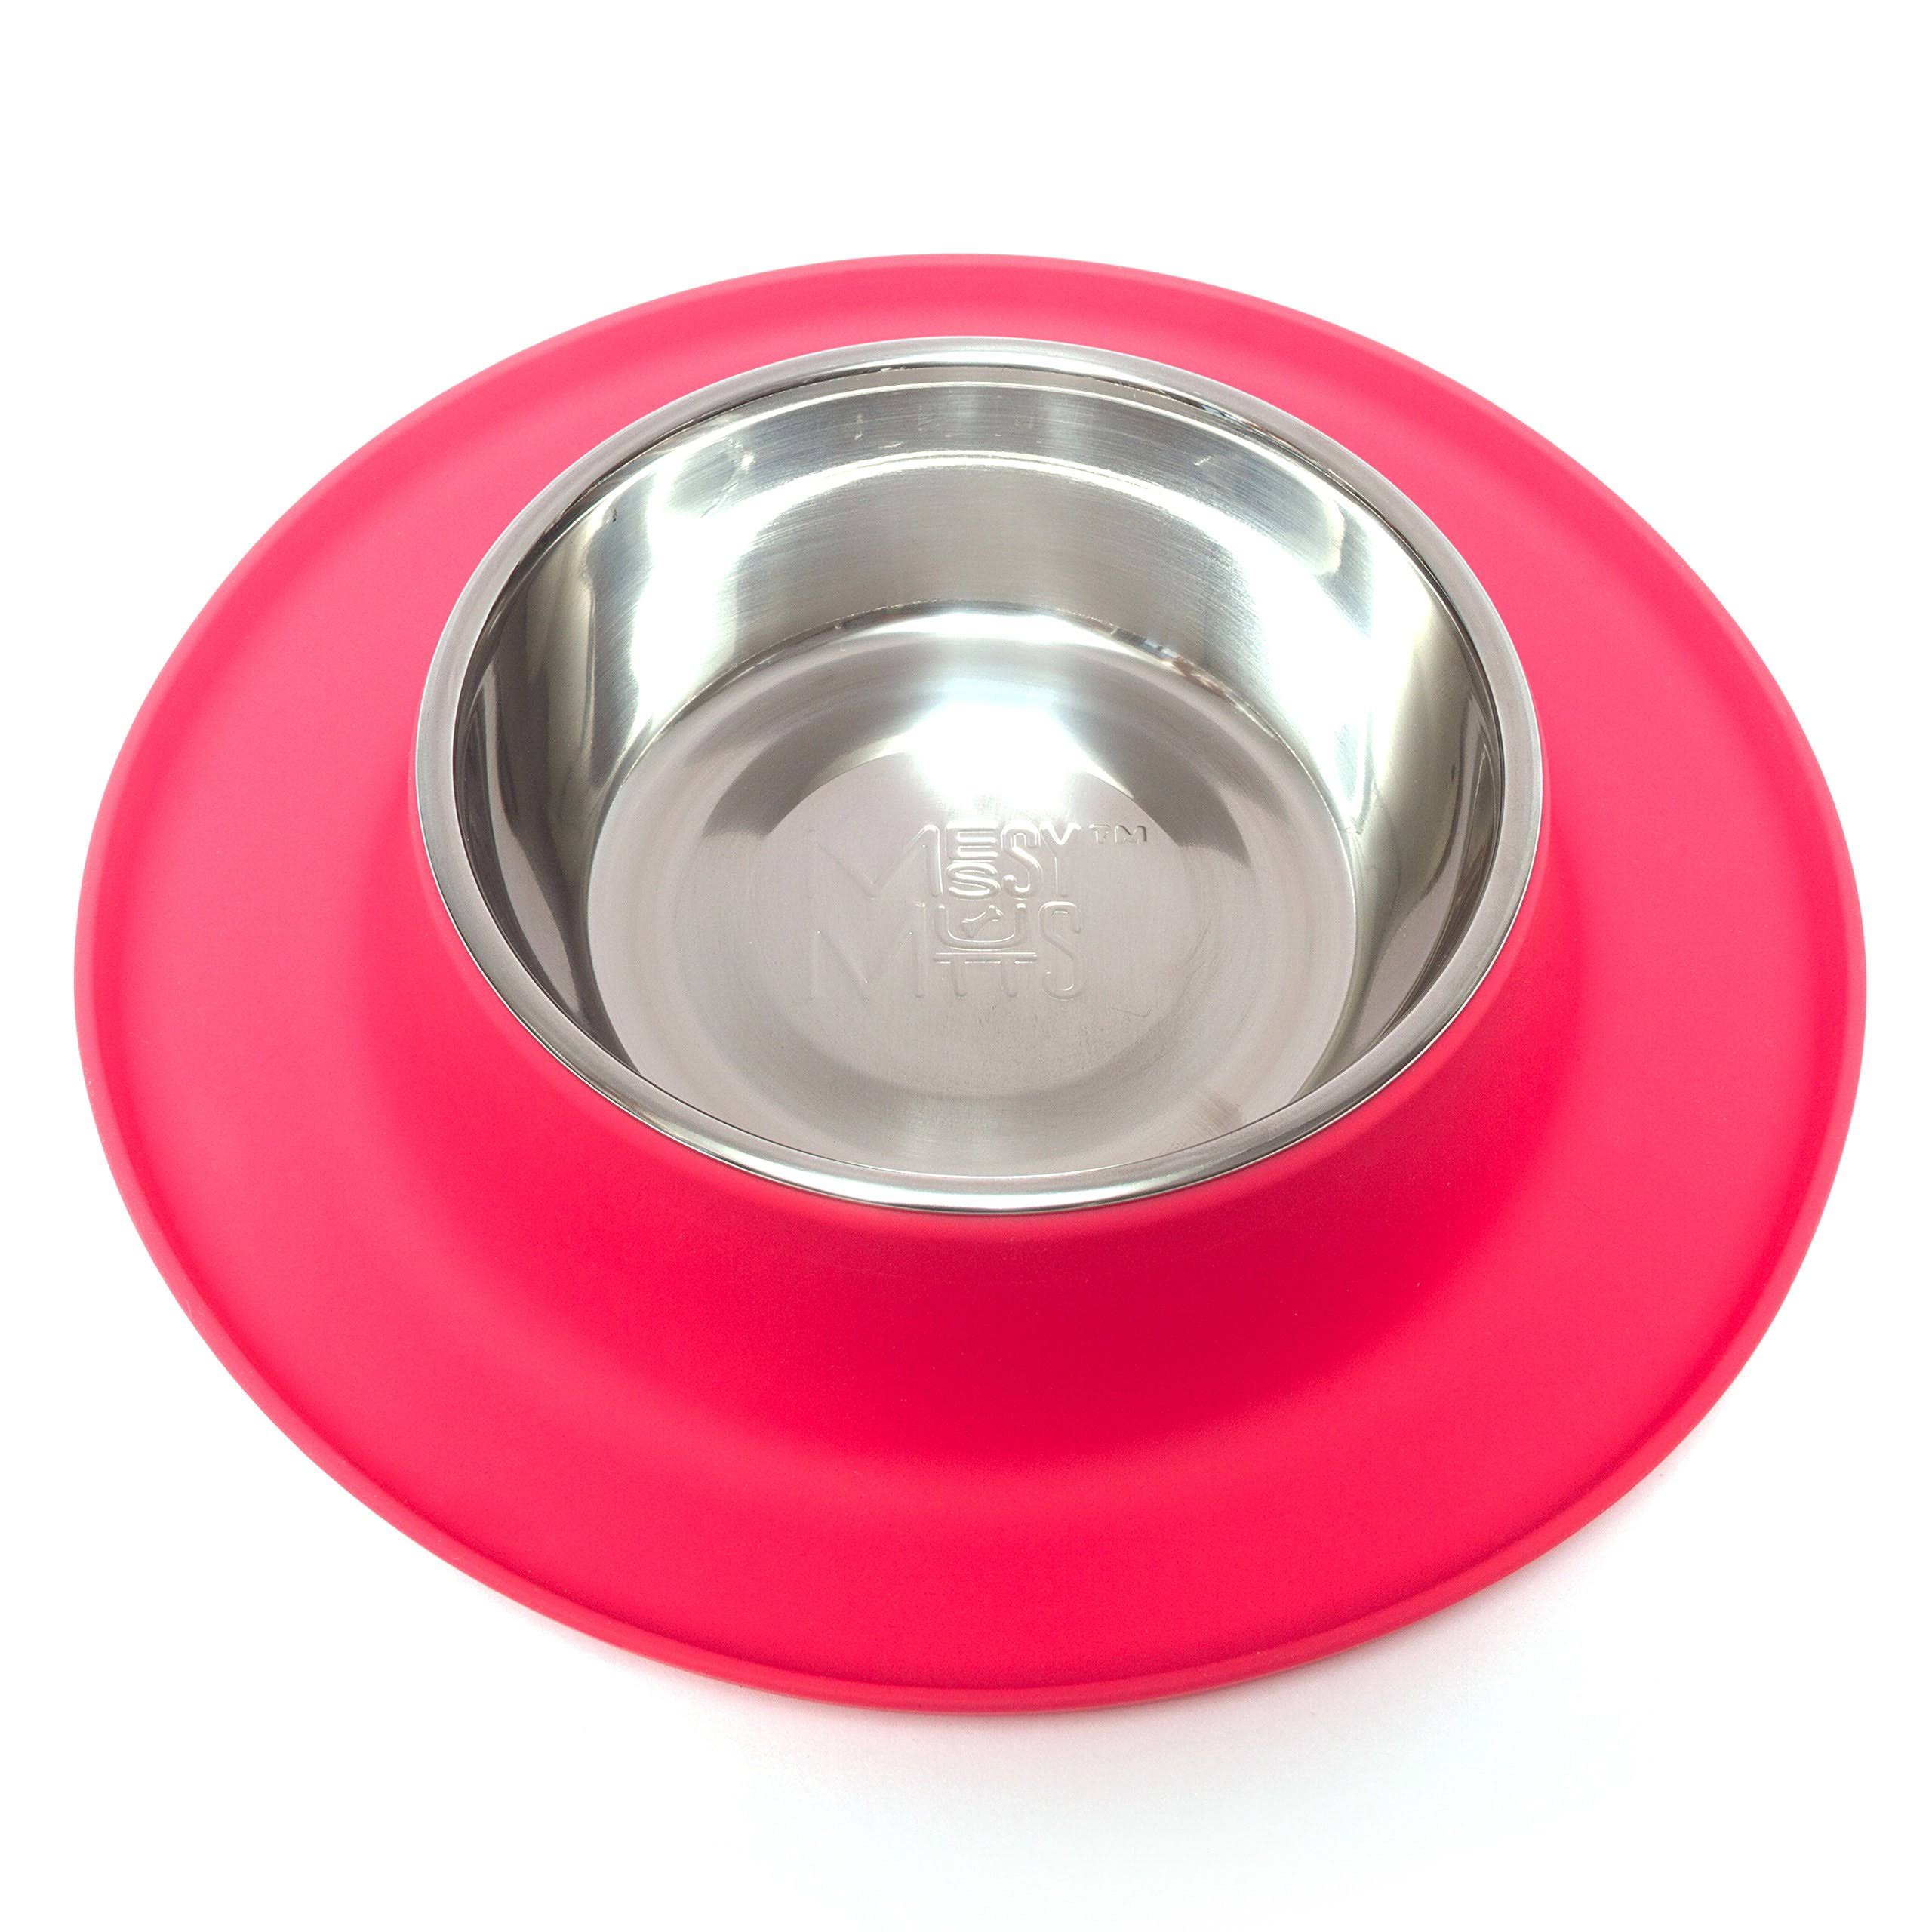 Messy Mutts Single Bowl Silicone Dog Feeder - Watermelon - Medium